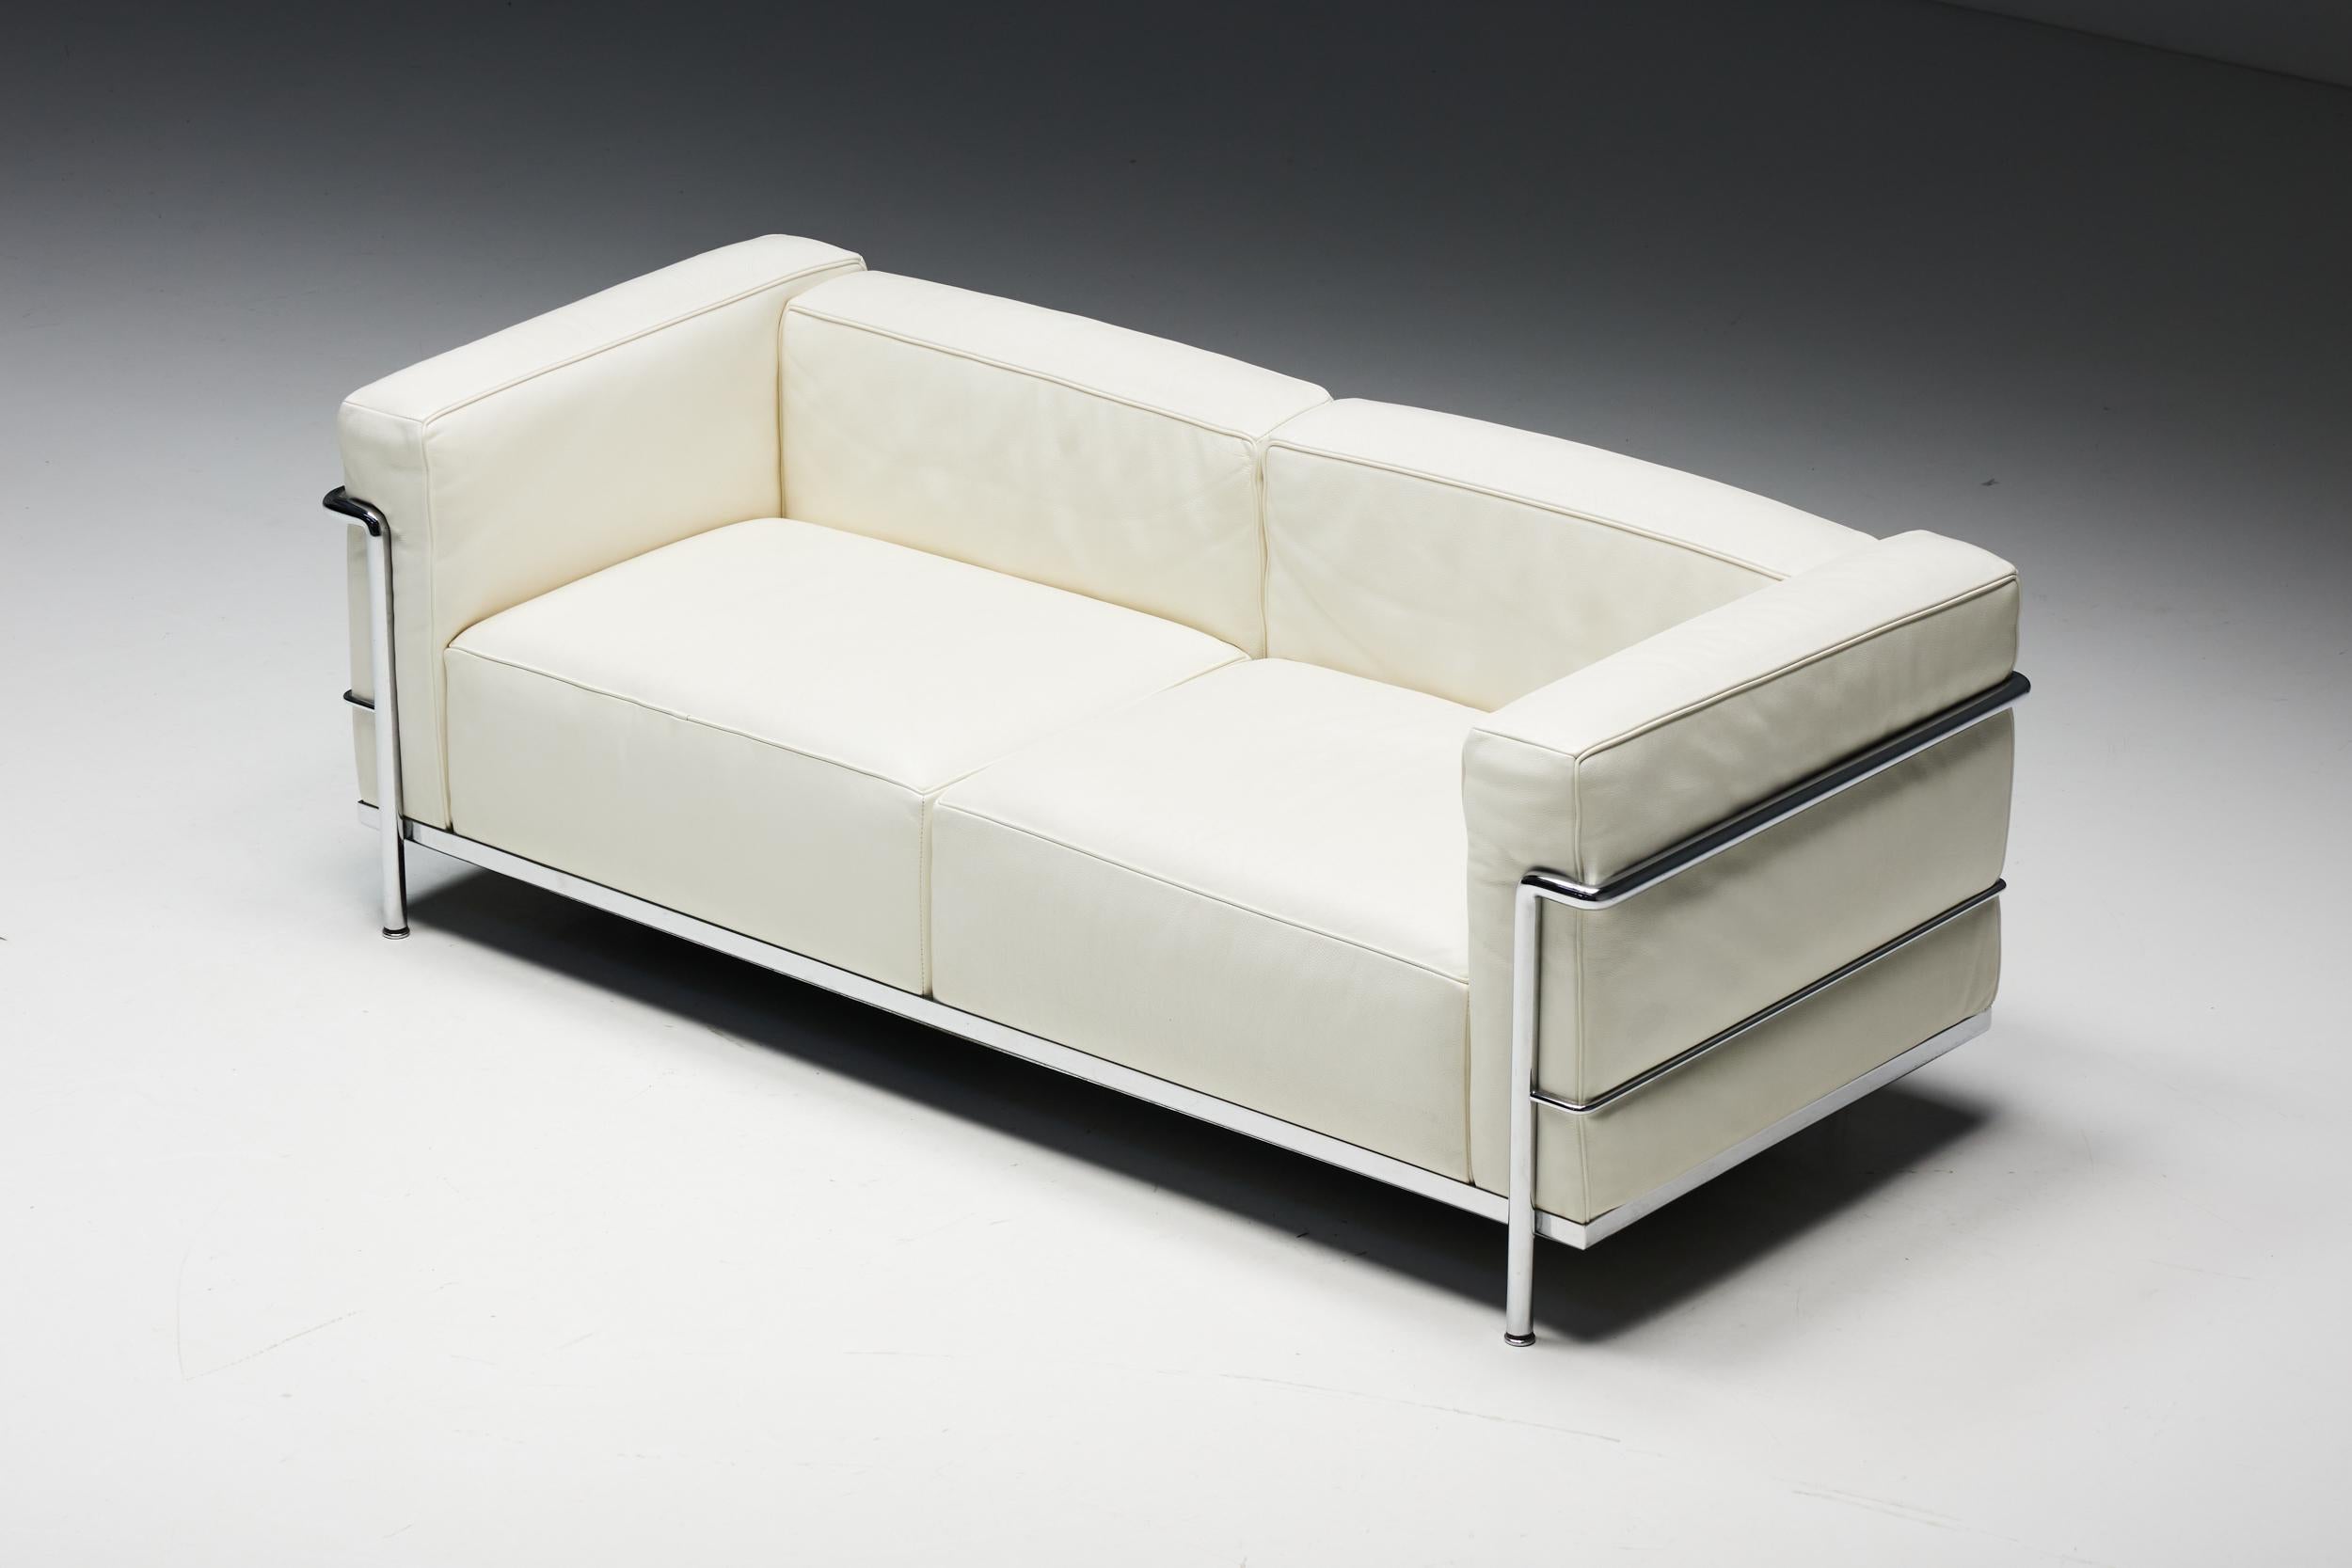 LC3 Zweisitziges Sofa für Cassina. Eine Ikone des modernistischen Designs, 1928 von Le Corbusier, seinem Cousin und Kollegen Pierre Jeanneret und Charlotte Perriand entworfen. Das Sofa ist ein Symbol für zeitlose Eleganz und außergewöhnlichen